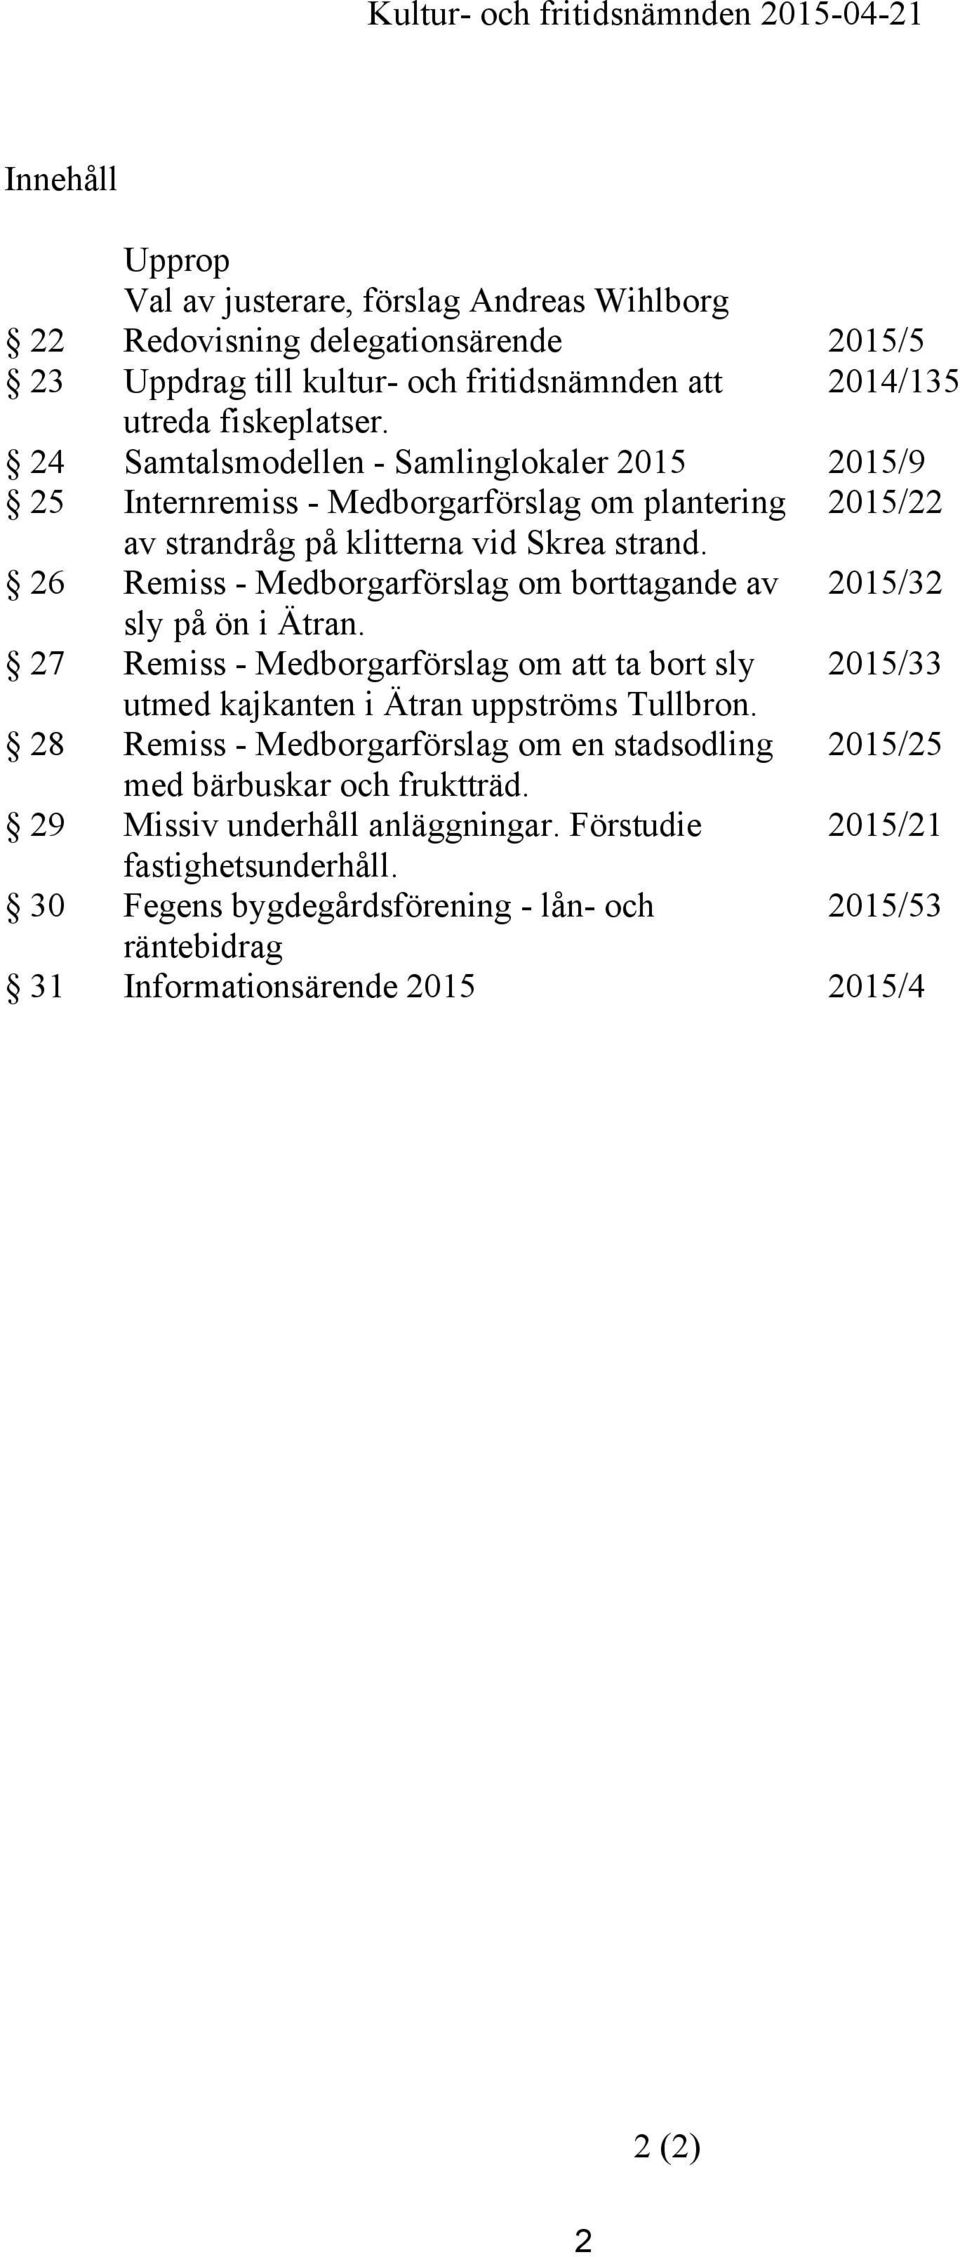 26 Remiss - Medborgarförslag om borttagande av 2015/32 sly på ön i Ätran. 27 Remiss - Medborgarförslag om att ta bort sly 2015/33 utmed kajkanten i Ätran uppströms Tullbron.